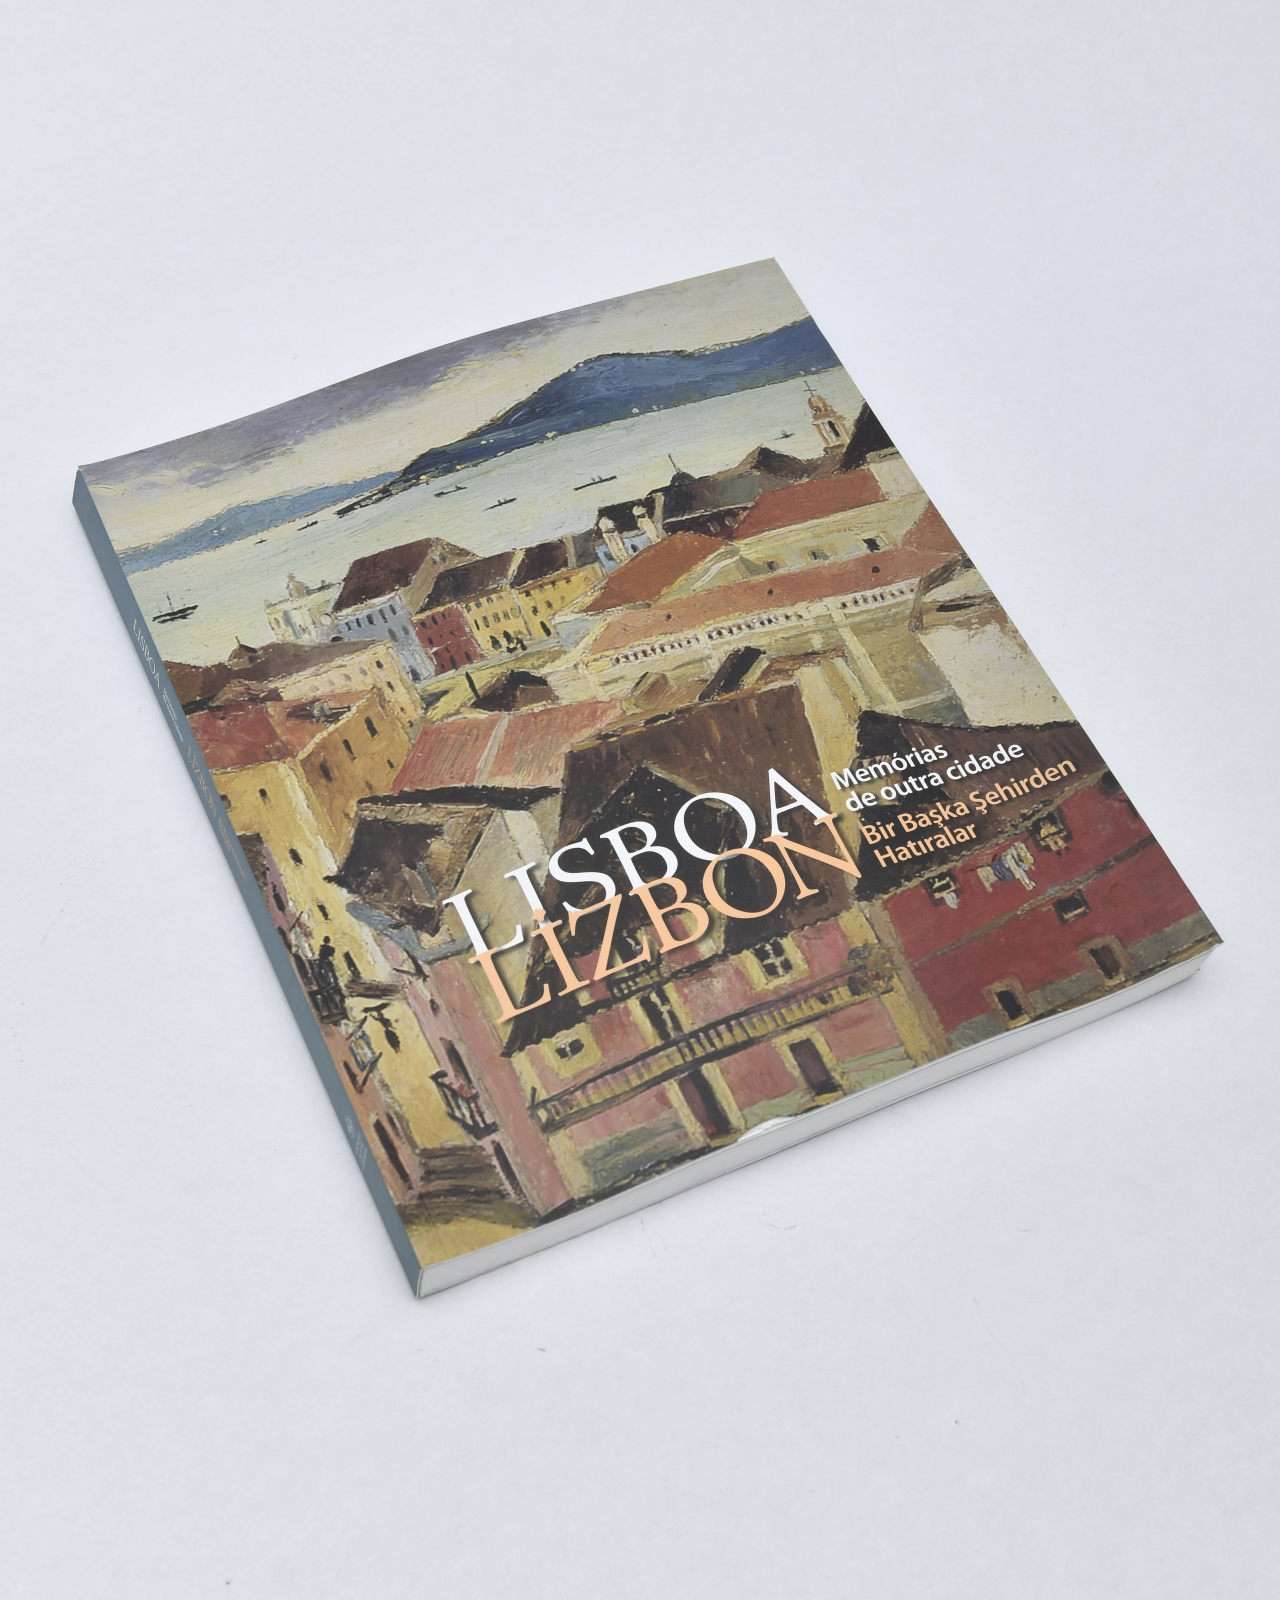 "LiZBON Bir Başka Şehirden Hatıralar" - Katalog